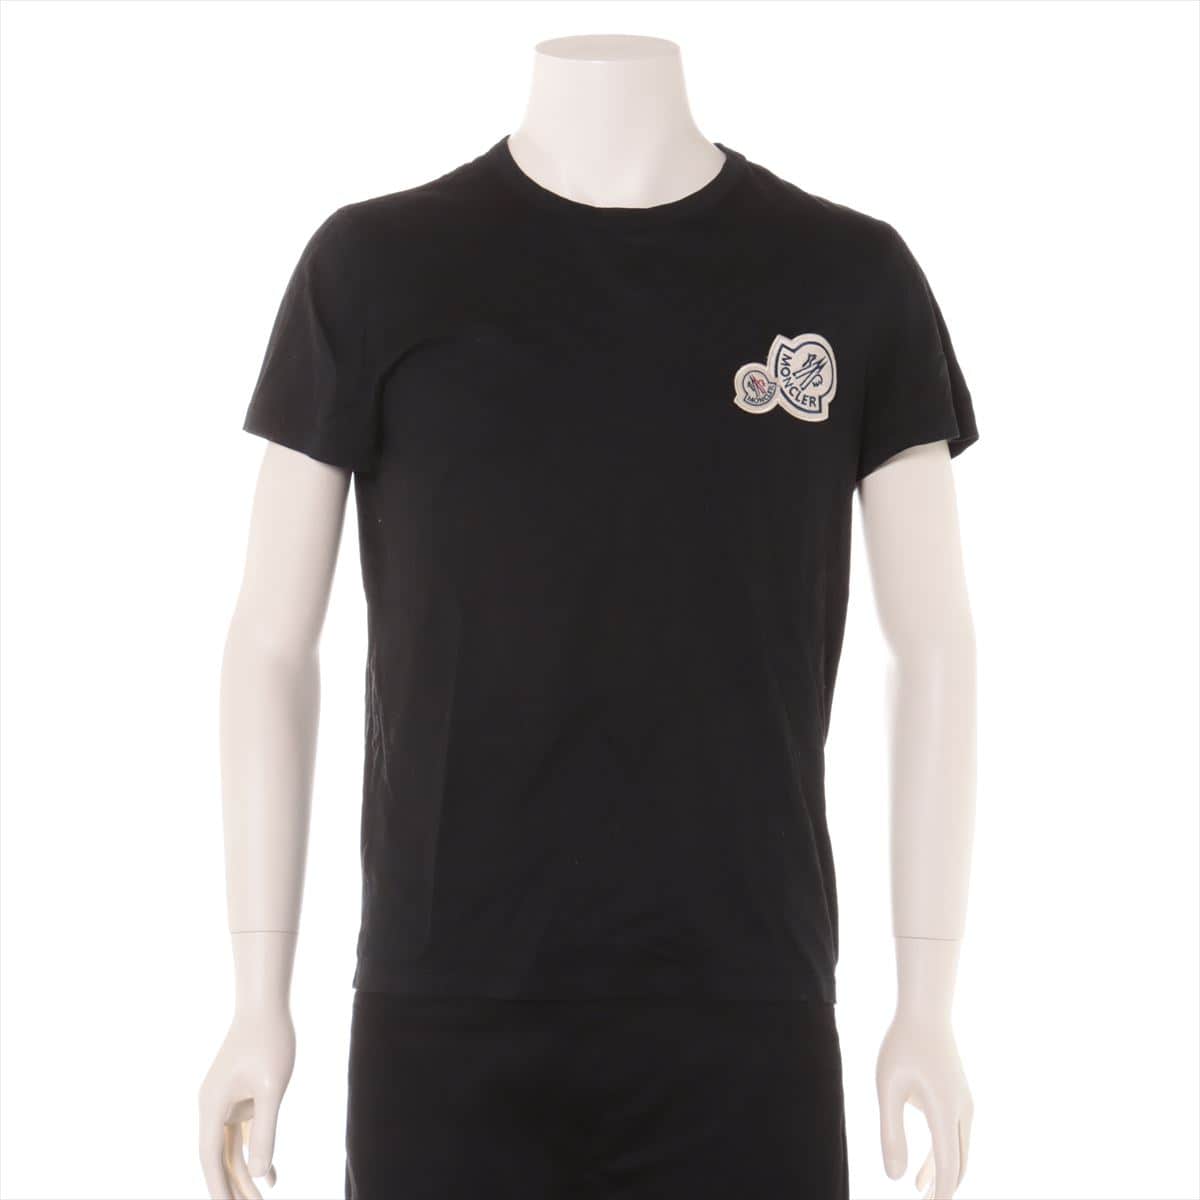 Moncler 20 years Cotton T-shirt S Men's Black